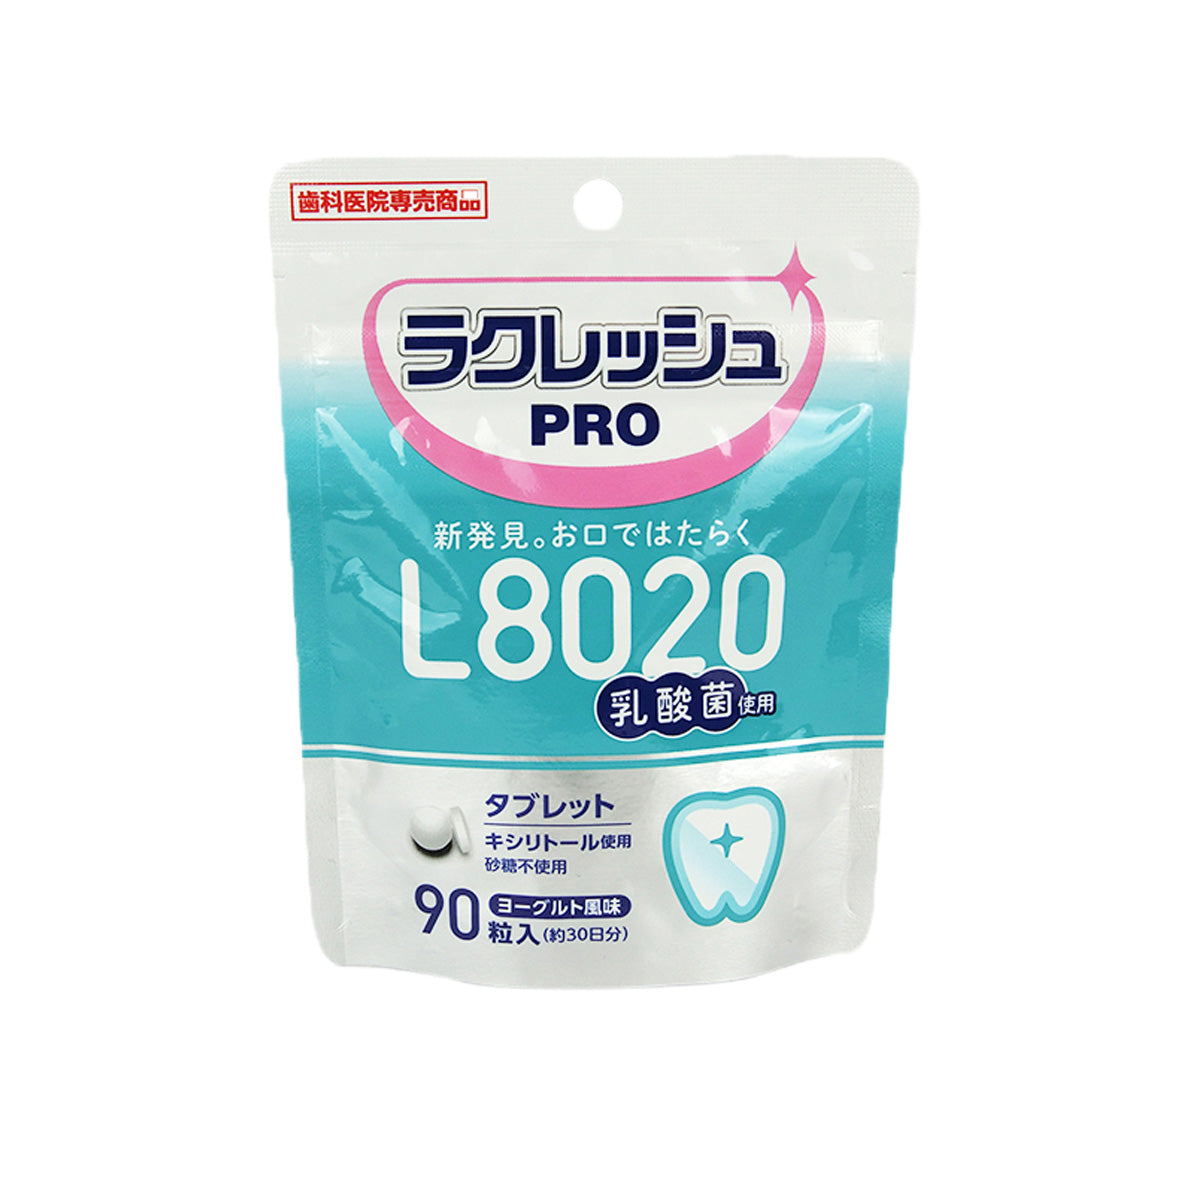 ラクレッシュPRO L8020乳酸菌タブレット 90粒入